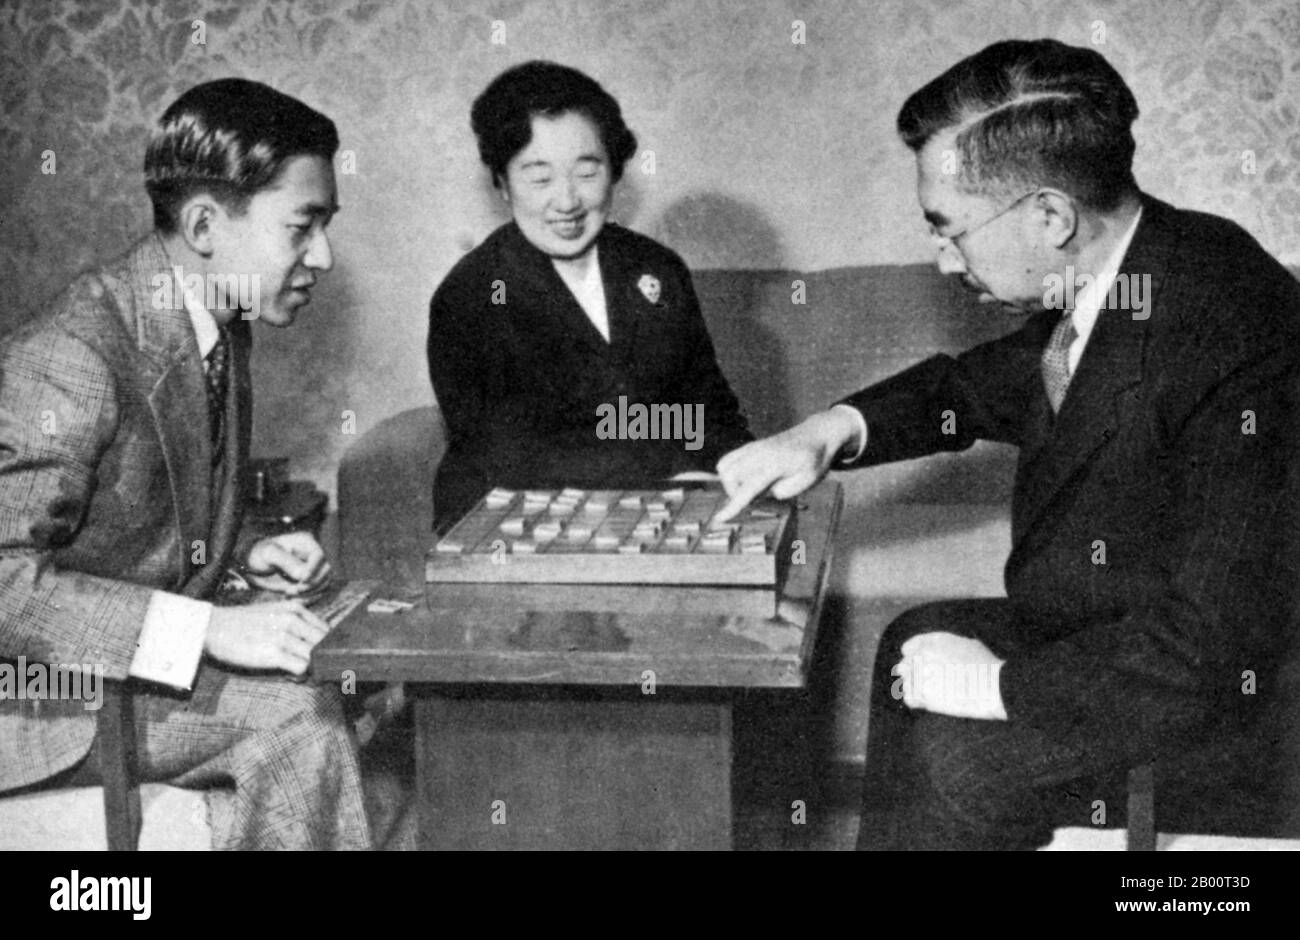 Japan: Die kaiserliche Familie spielt ein Brettspiel. Informelles Bild der kaiserlichen Familie, die ein Brettspiel spielt (1950er Jahre). Kronprinz Akihito links, Kaiserin Kojun Zentrum, Kaiser Hirohito rechts. Hirohito, der Kaiser von Shōwa, (29. April 1901 – 7. Januar 1989), war der 124. Kaiser von Japan gemäß dem traditionellen Orden, der vom 25. Dezember 1926 bis zu seinem Tod im Jahr 1989 regierte. Obwohl er außerhalb Japans besser unter seinem persönlichen Namen Hirohito bekannt ist, wird er in Japan nun ausschließlich unter seinem posthumen Namen Kaiser Shōwa bezeichnet. Stockfoto